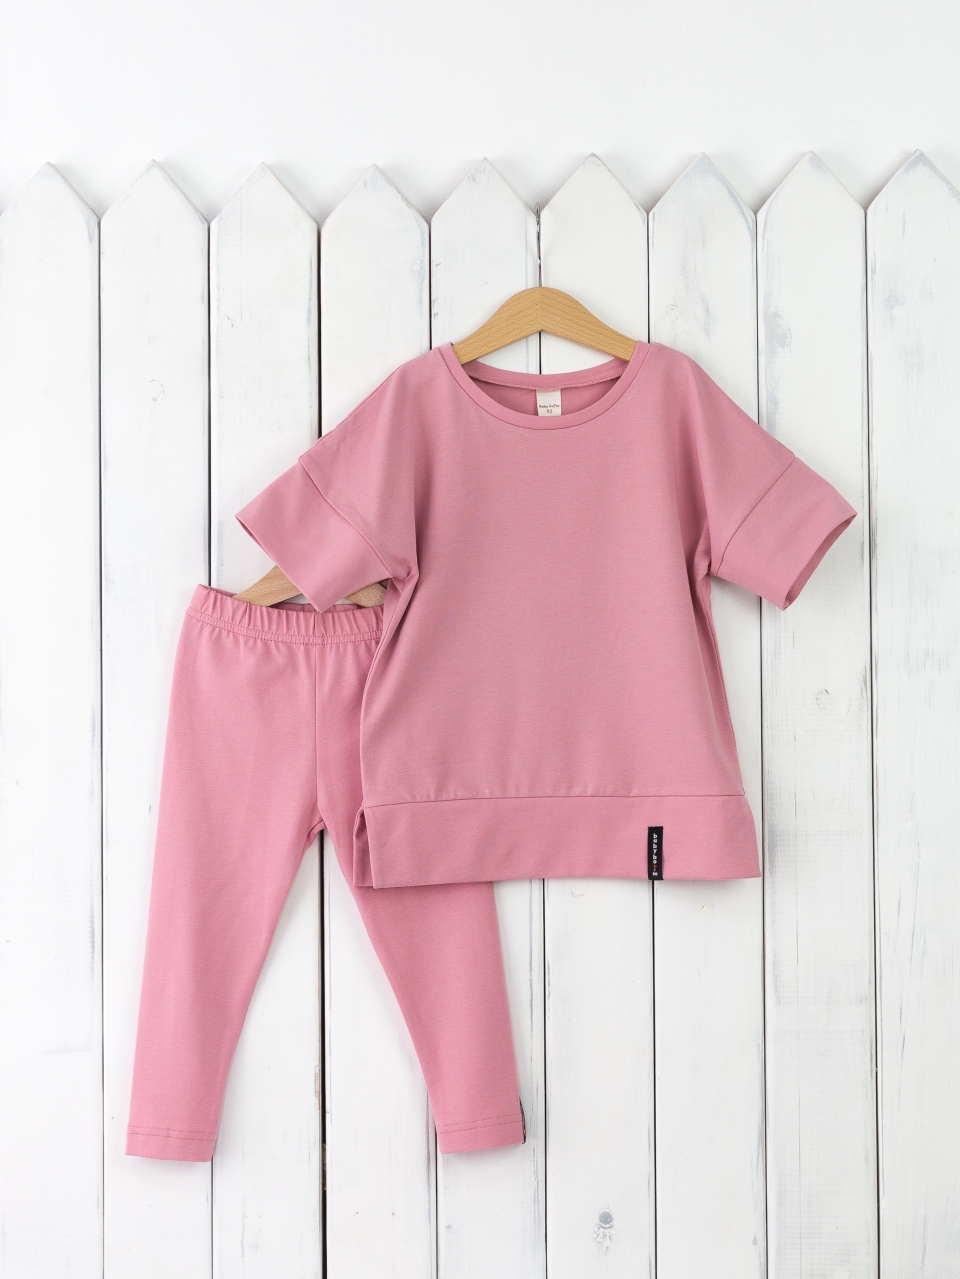 КД352/11-К Комплект для девочки р.98 футболка+легинсы/розовый зефир Бэби Бум - Орск 